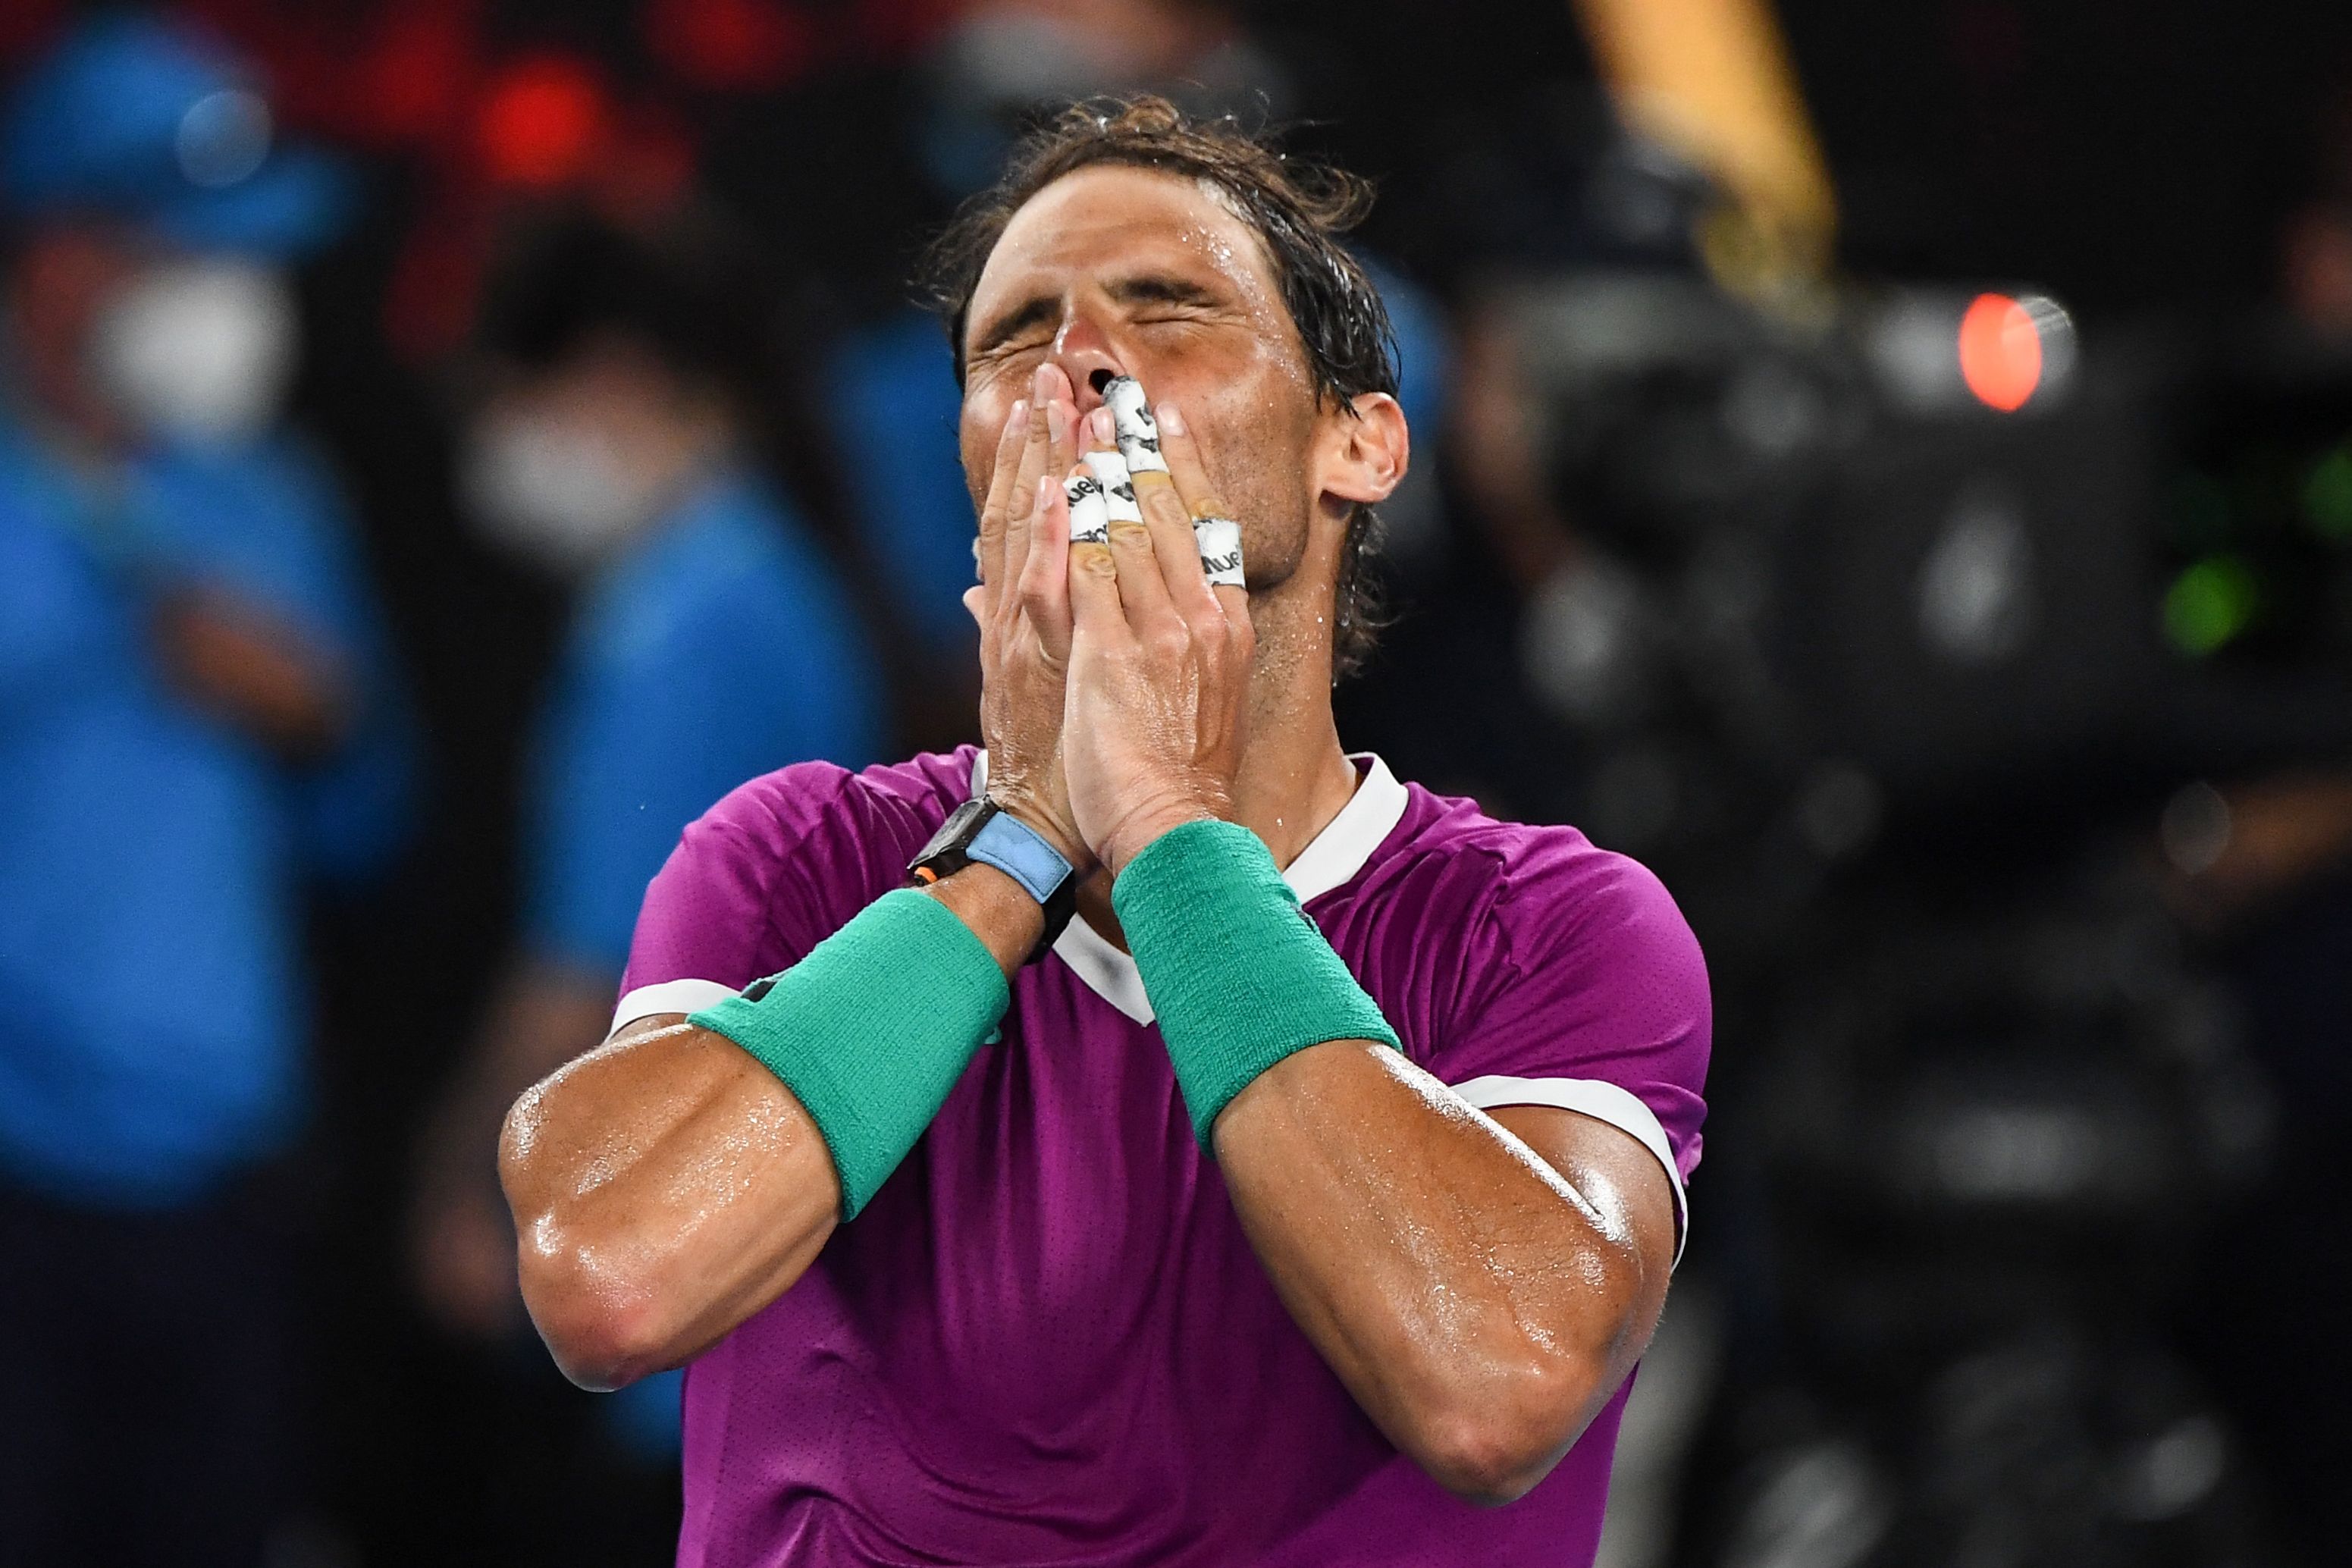 El español Rafael Nadal celebra después de haberle ganado al italiano Matteo Berrettini en el Abierto de Australia. Ahora jugará la final ante Daniil Medvedev. Foto Prensa Libre: AFP.